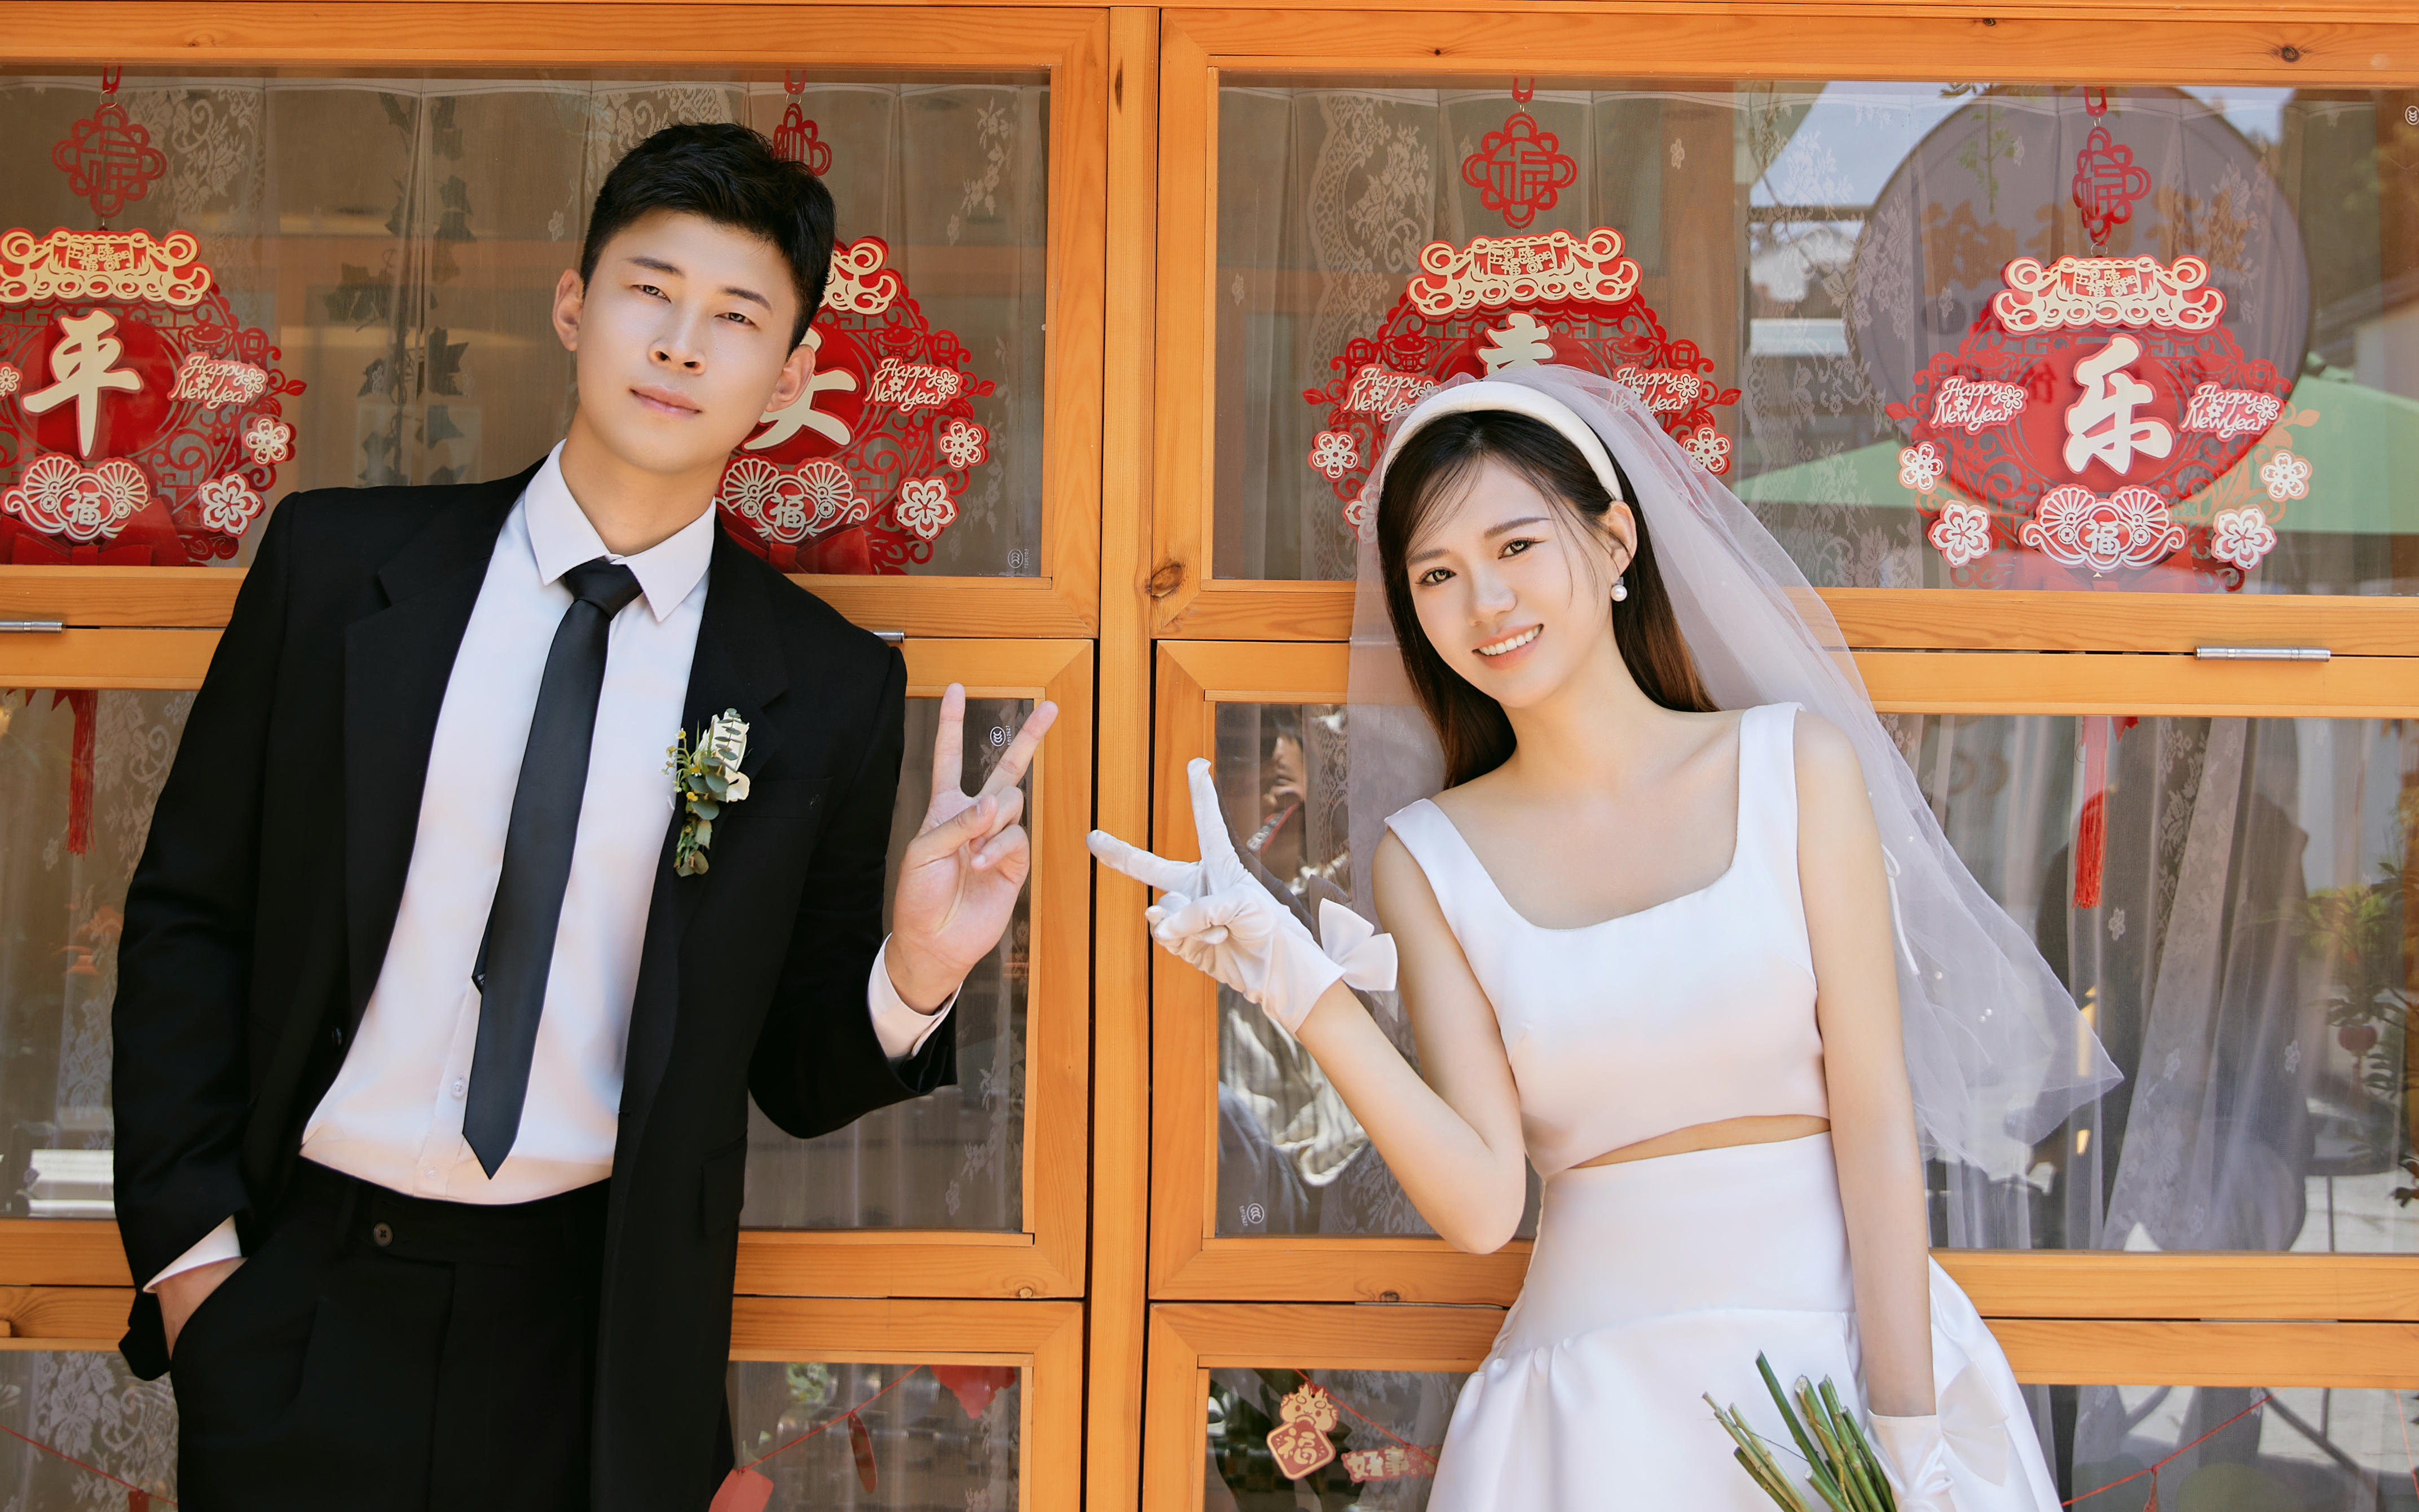 客片分享！！韩系电影中的街拍婚纱照💗狠狠心动了